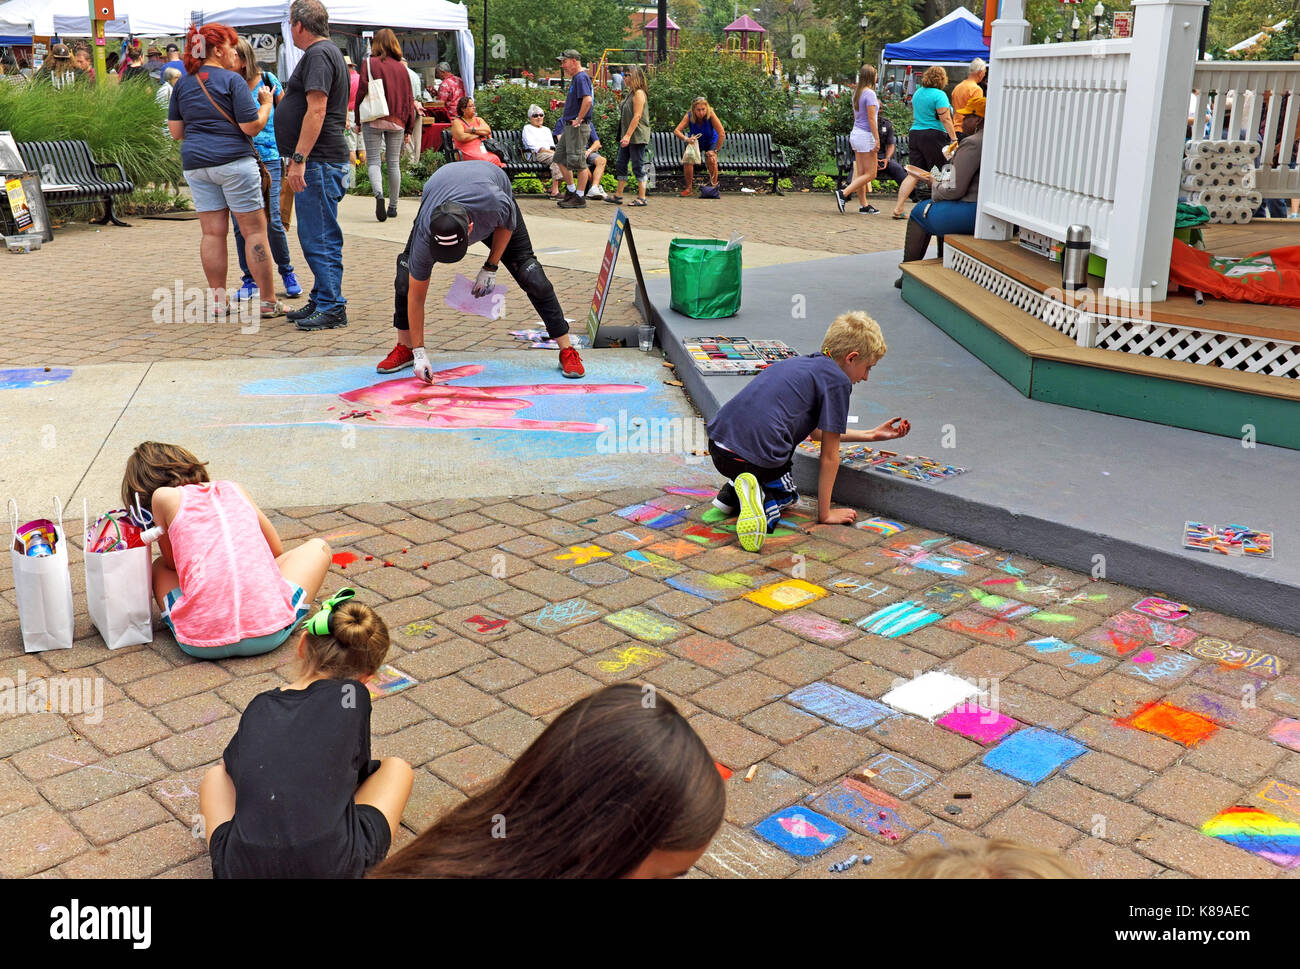 Le Tremont ohio 19e festival d'art et de culture ont fait ressortir des adultes et des enfants à Lincoln Park dans la banlieue de Cleveland, Ohio, USA. Banque D'Images